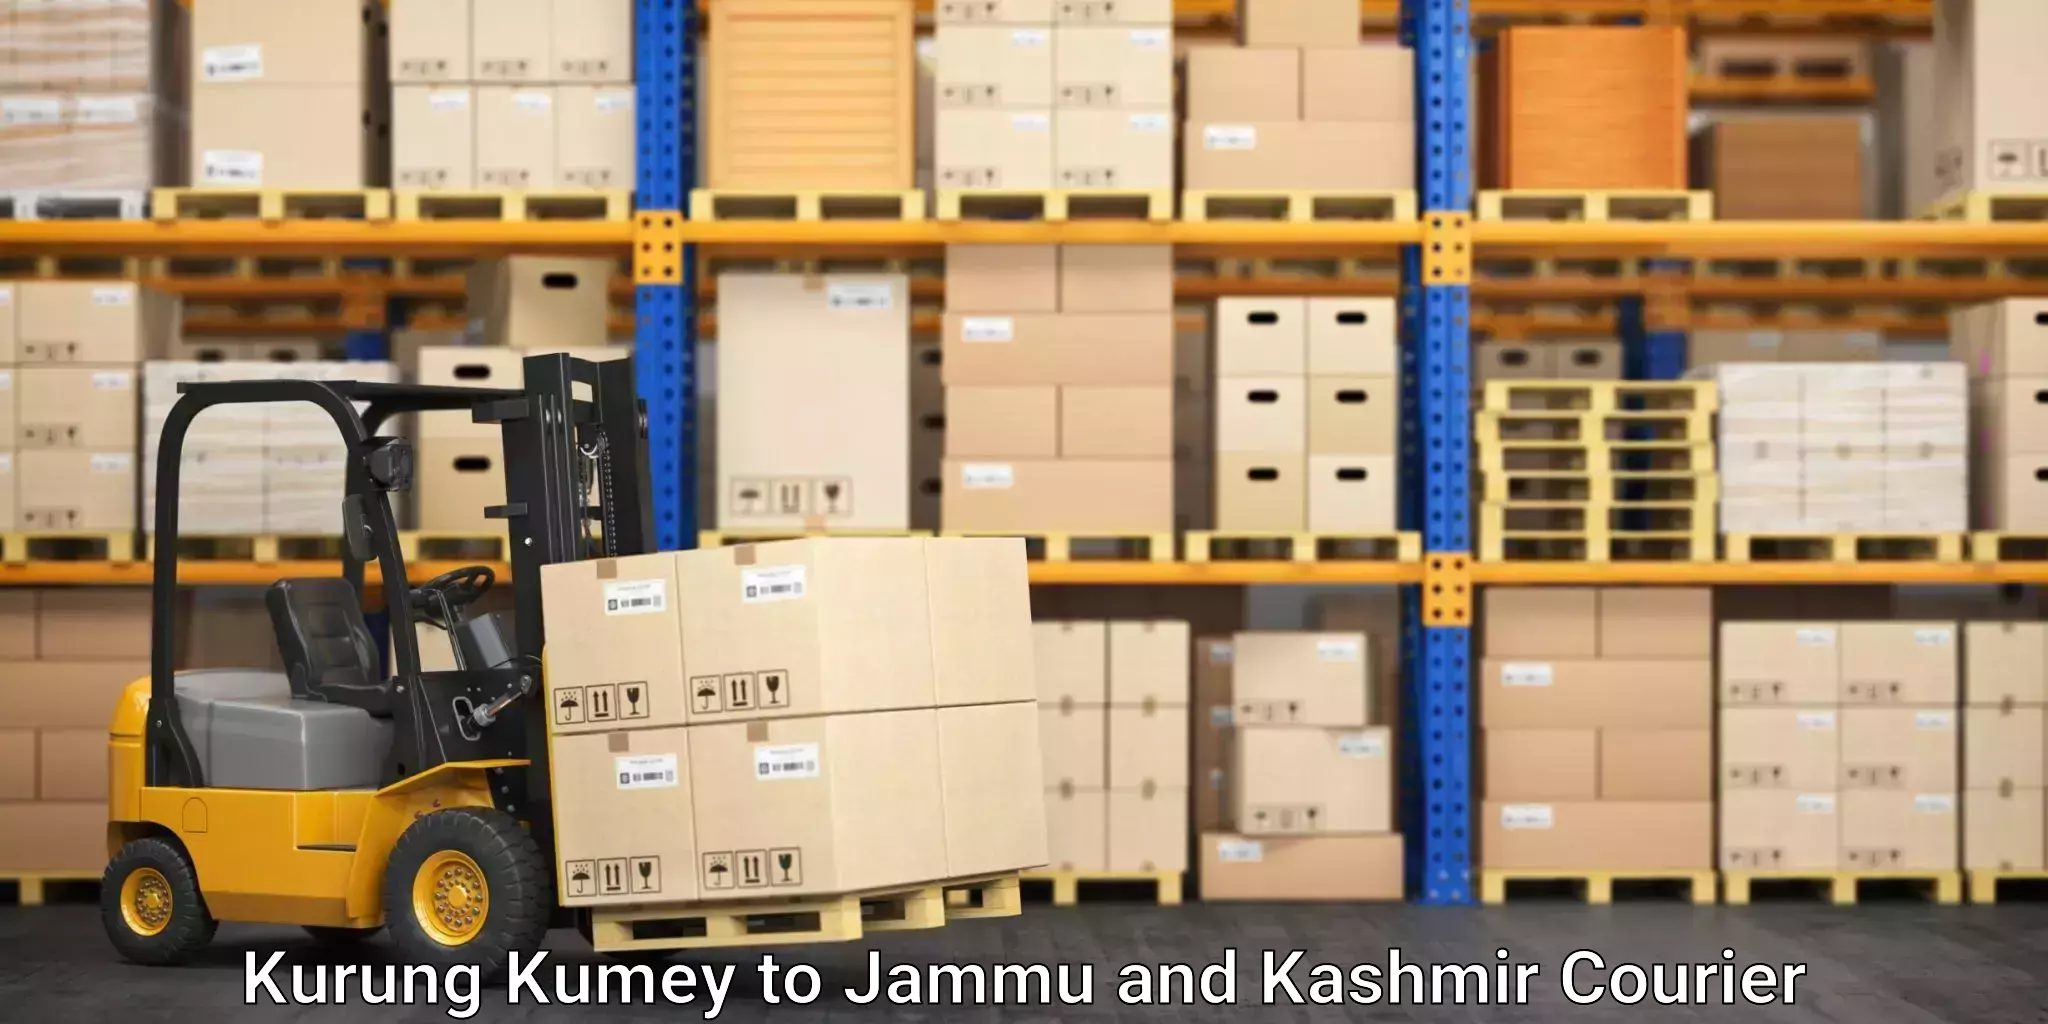 Local courier options Kurung Kumey to IIT Jammu